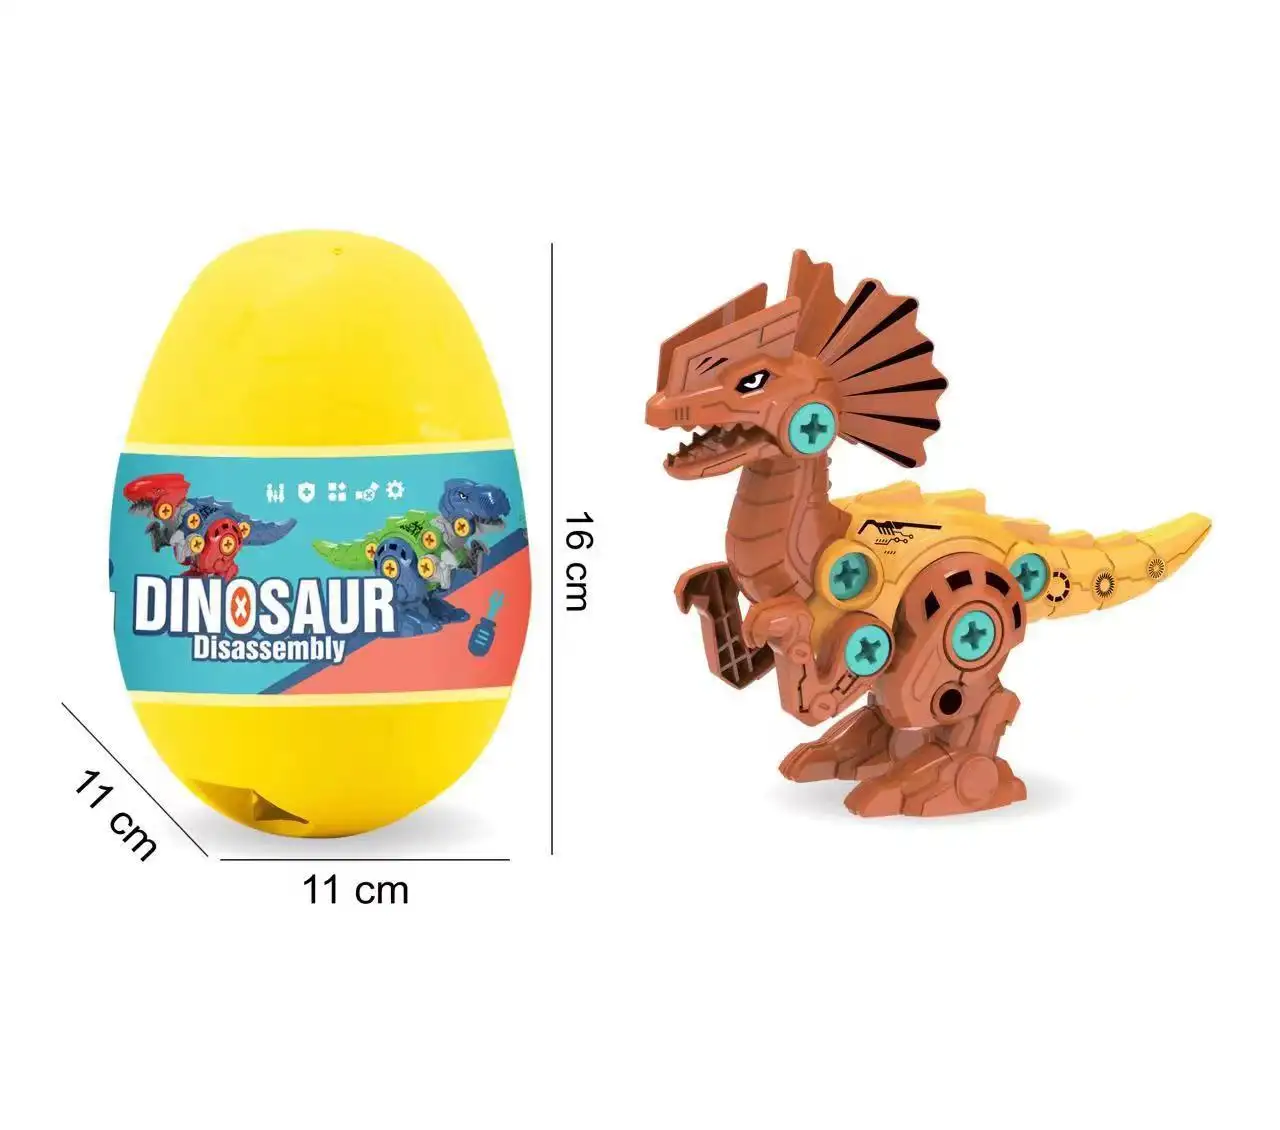 Produits chauds Capsule oeuf Pack tyrannosaure modélisation démontage dinosaure jouets fantaisie dinosaure bricolage démonter dinosaure